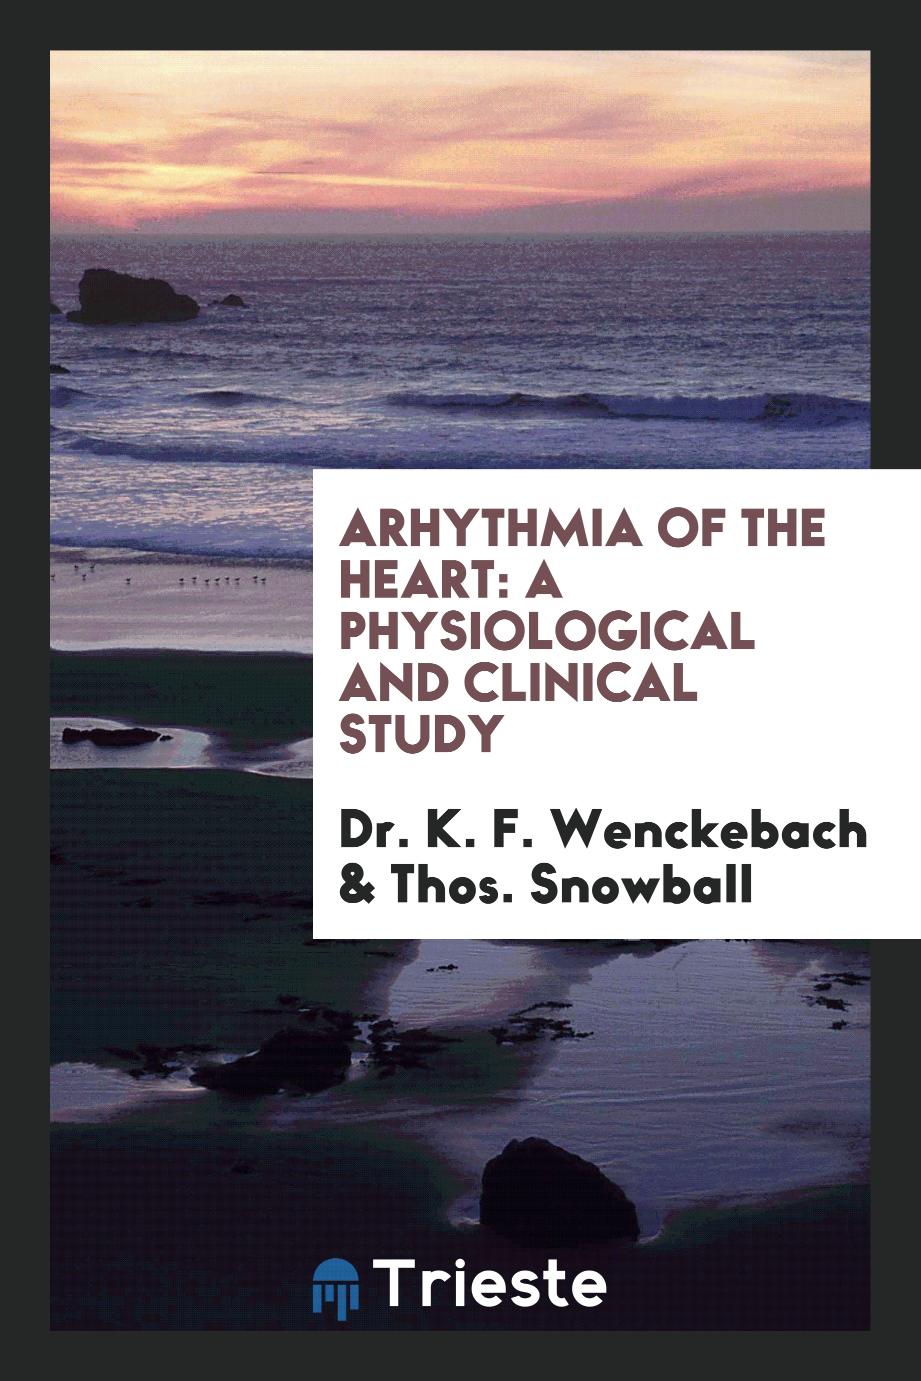 Arhythmia of the Heart: A Physiological and Clinical Study